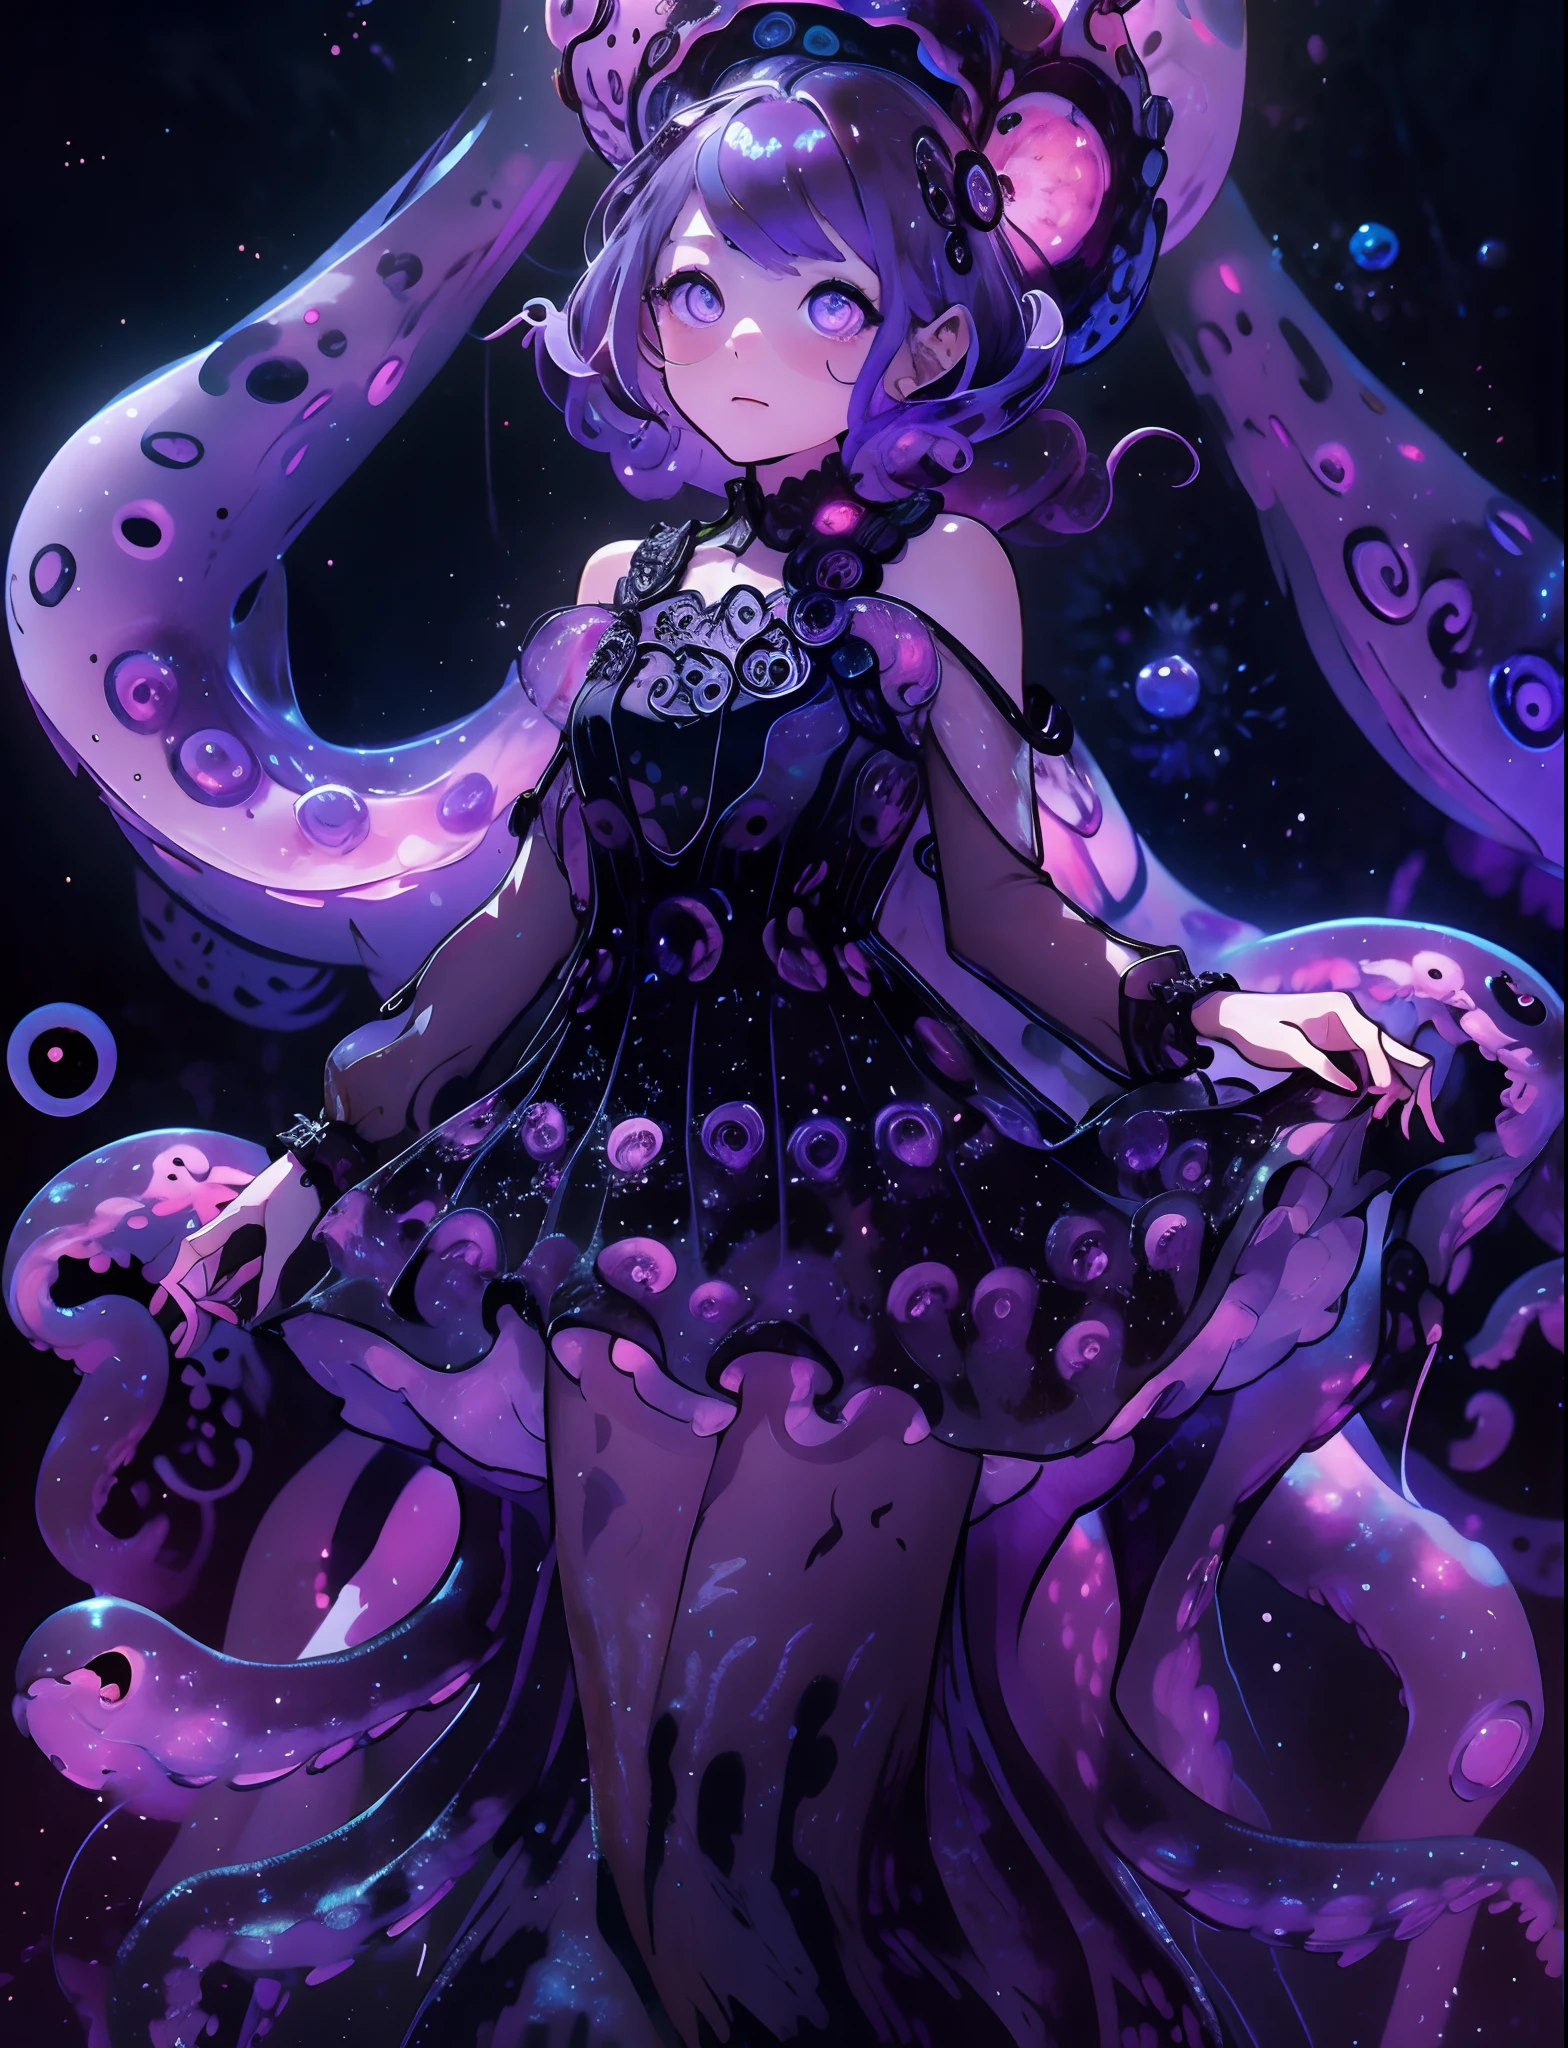 해파리 드레스를 입은 소녀. 검은 해파리와 보라색 빛. 보라색 발광체가 늘어선 검은색 촉수. 깊은 바다.